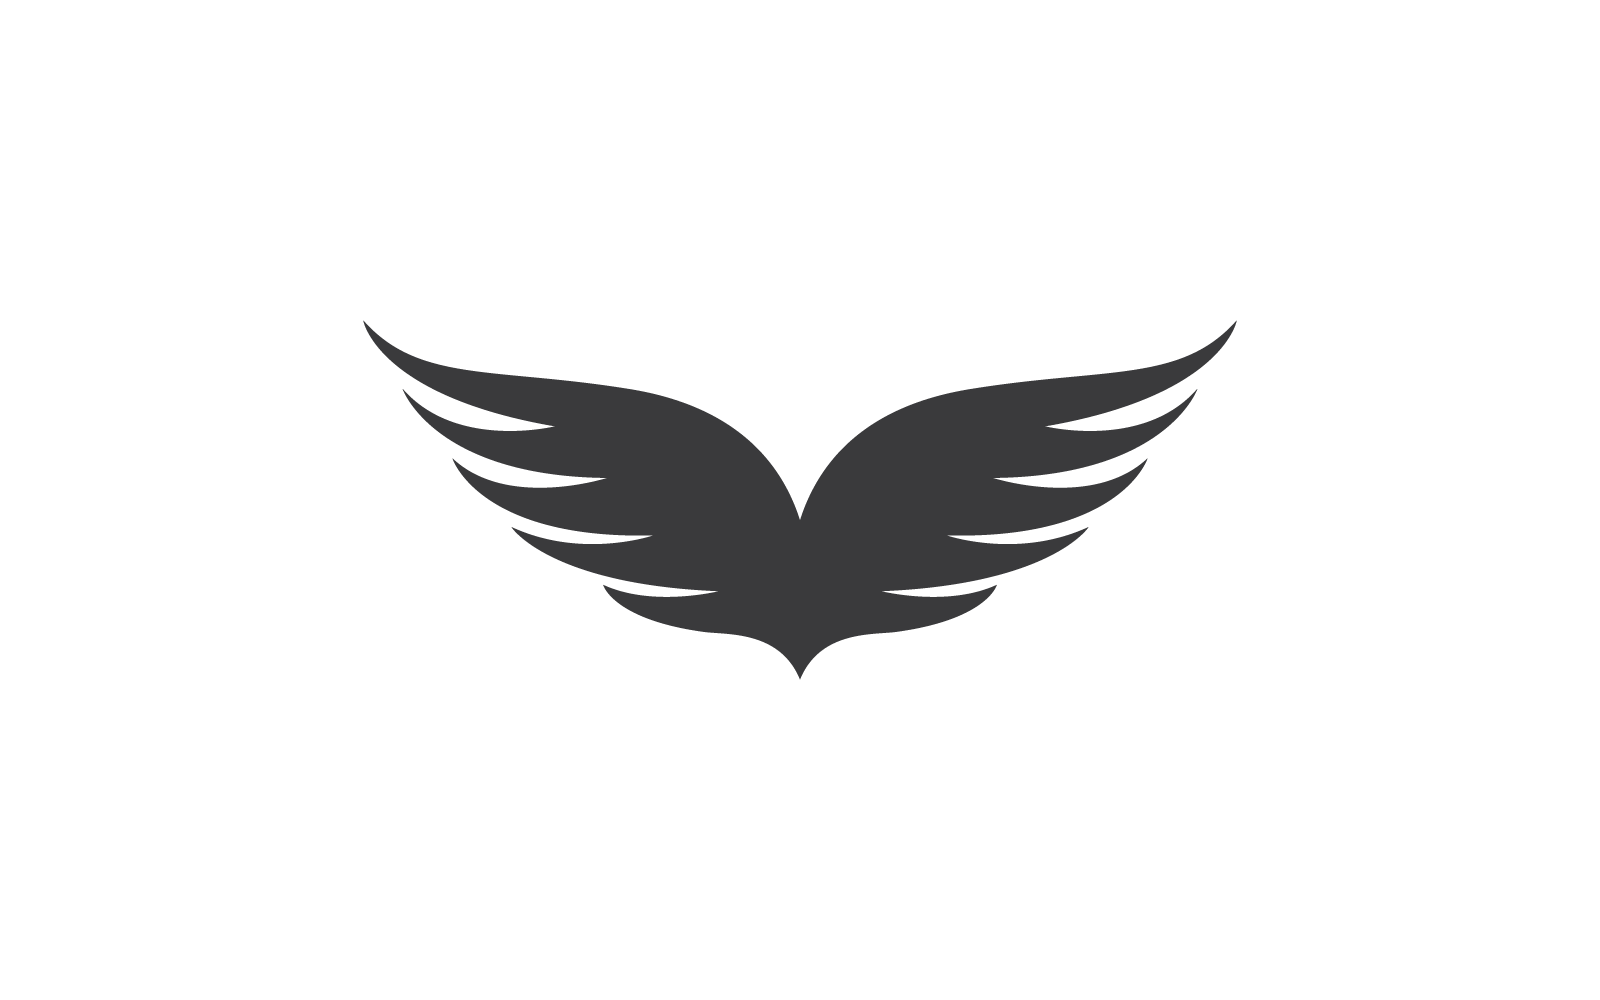 Kanat illüstrasyon logo simge vektör düz tasarım şablonu